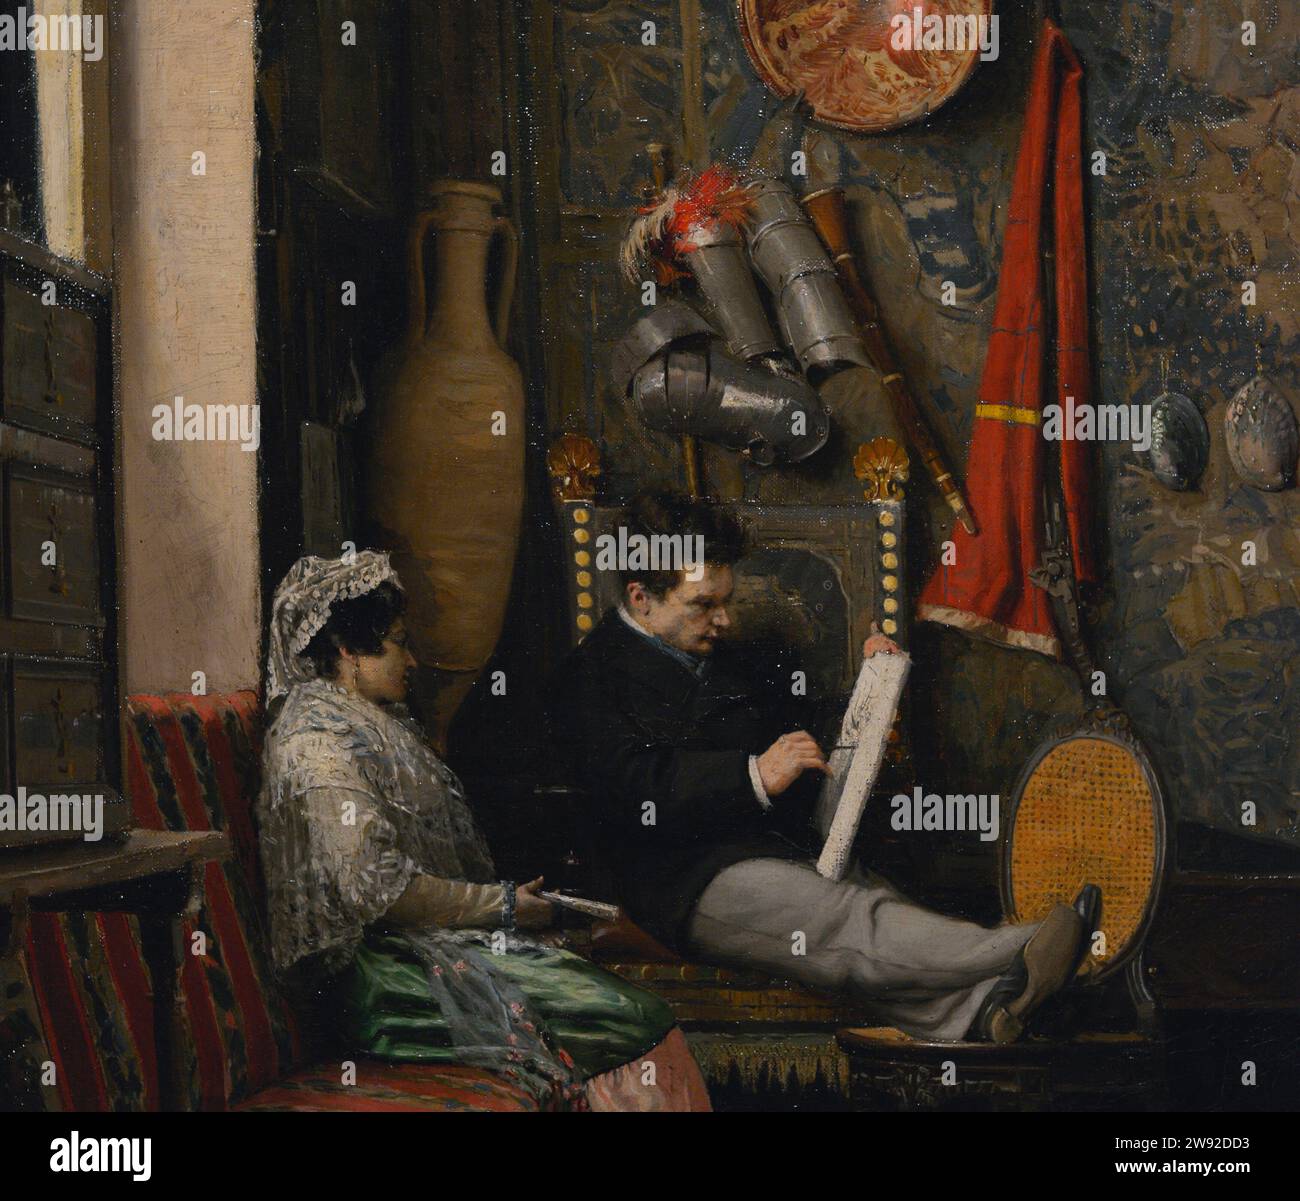 Casimiro Sainz y Saiz (1853-1898). Spanischer Maler. Ruhe, ein Maleratelier. Was denkt er?, 1876. Öl auf Leinwand, 62 x 51,5 cm. Details. Prado-Museum. Madrid. Spanien. Stockfoto